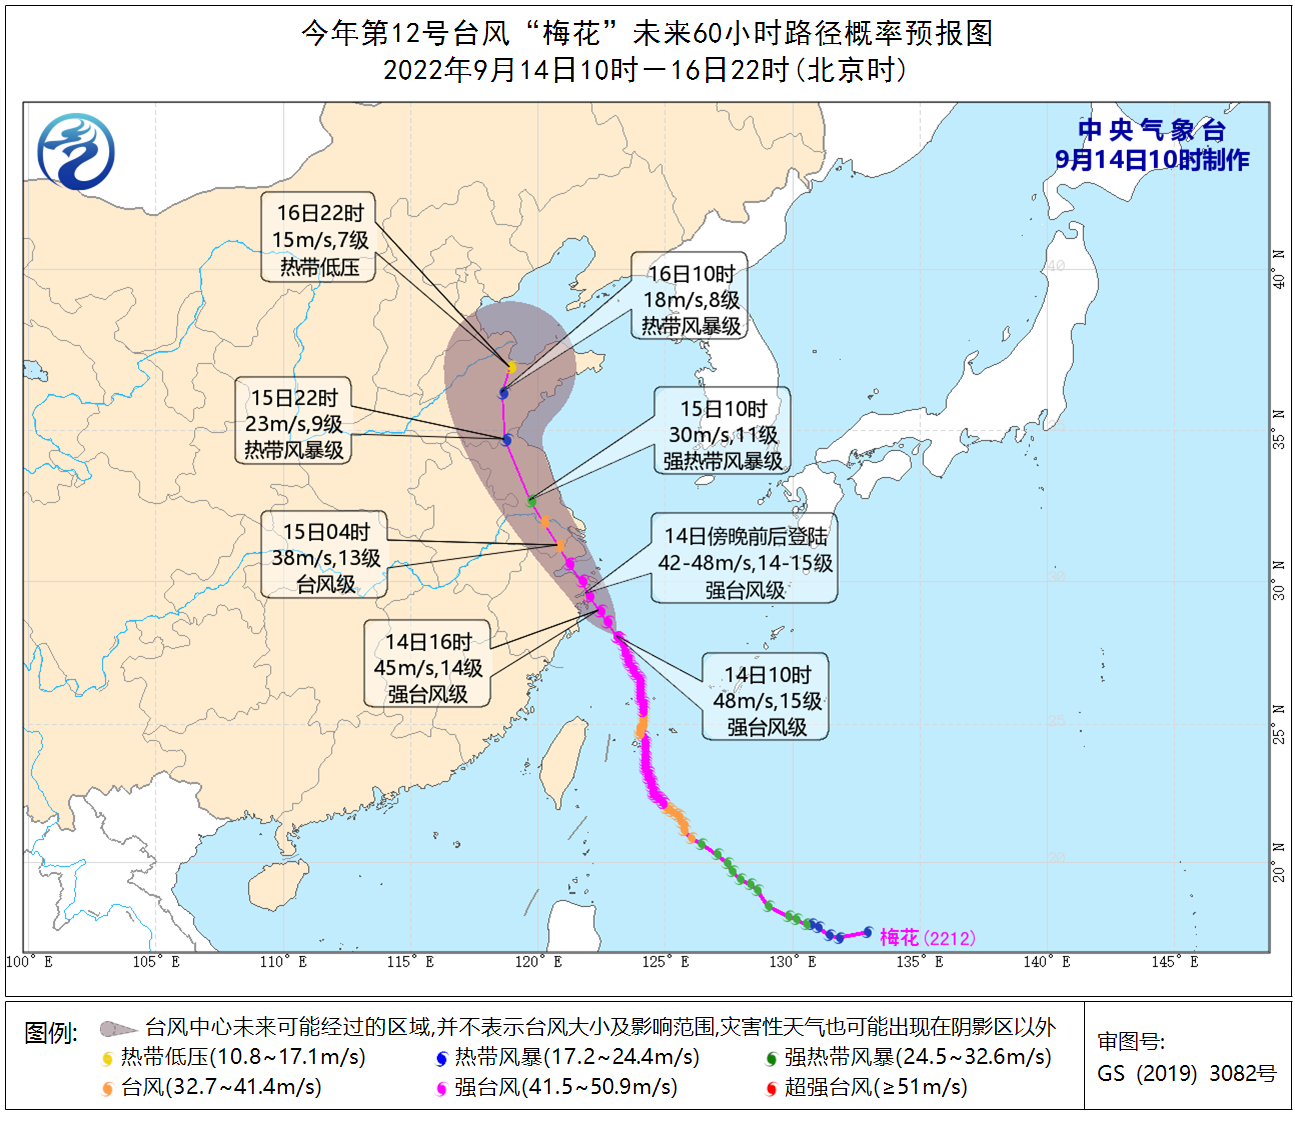 中央气象台9月14日10时发布台风红色预警